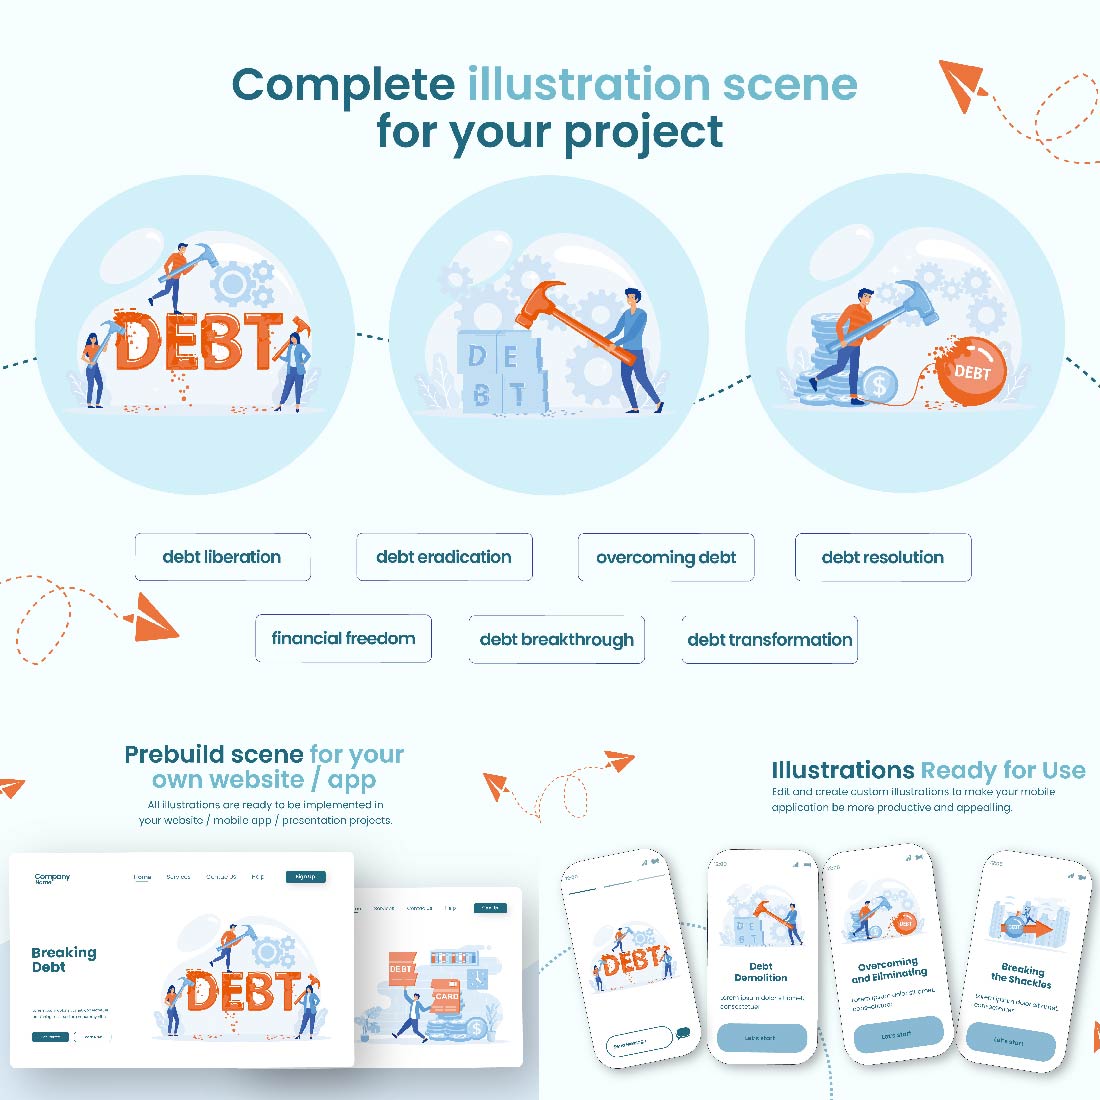 Illustration Design Breaking Debt preview image.